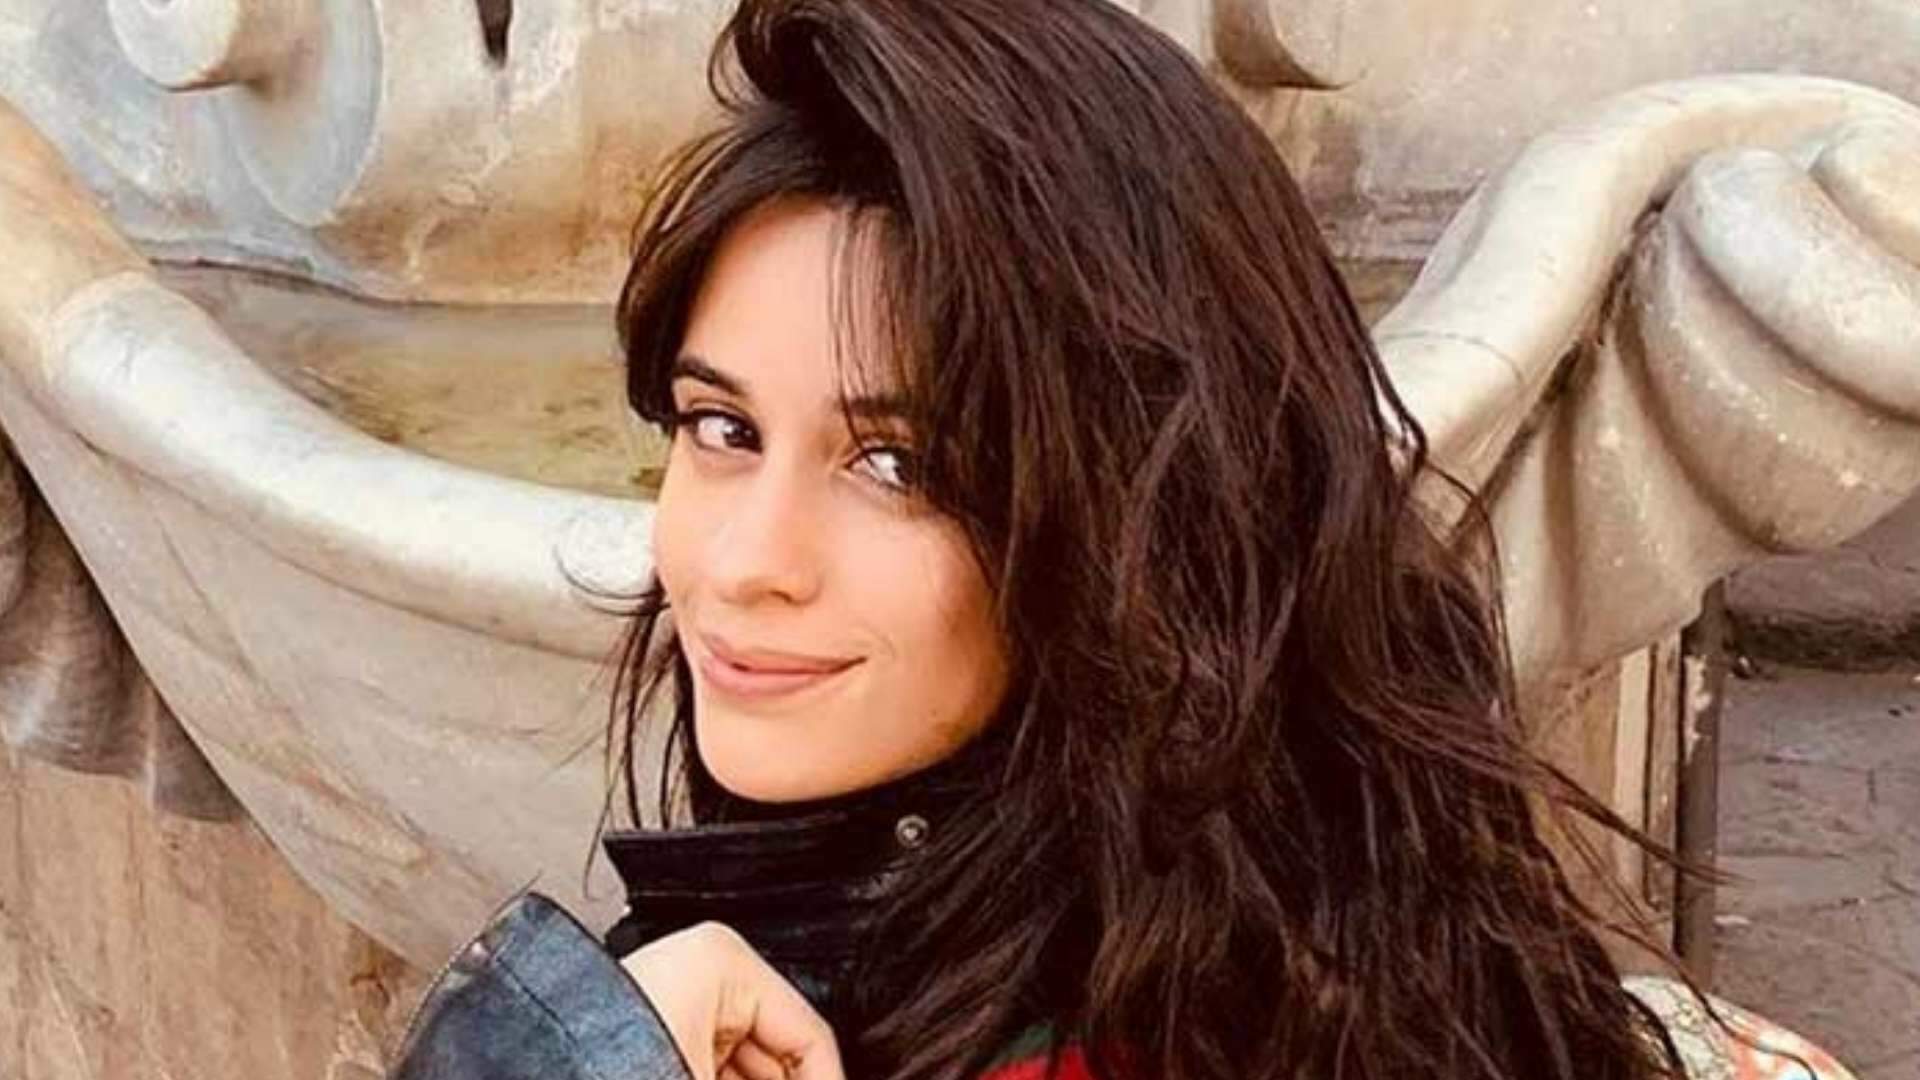 Camila Cabello divulga teaser do seu novo clipe e detalhe curioso chama atenção da web